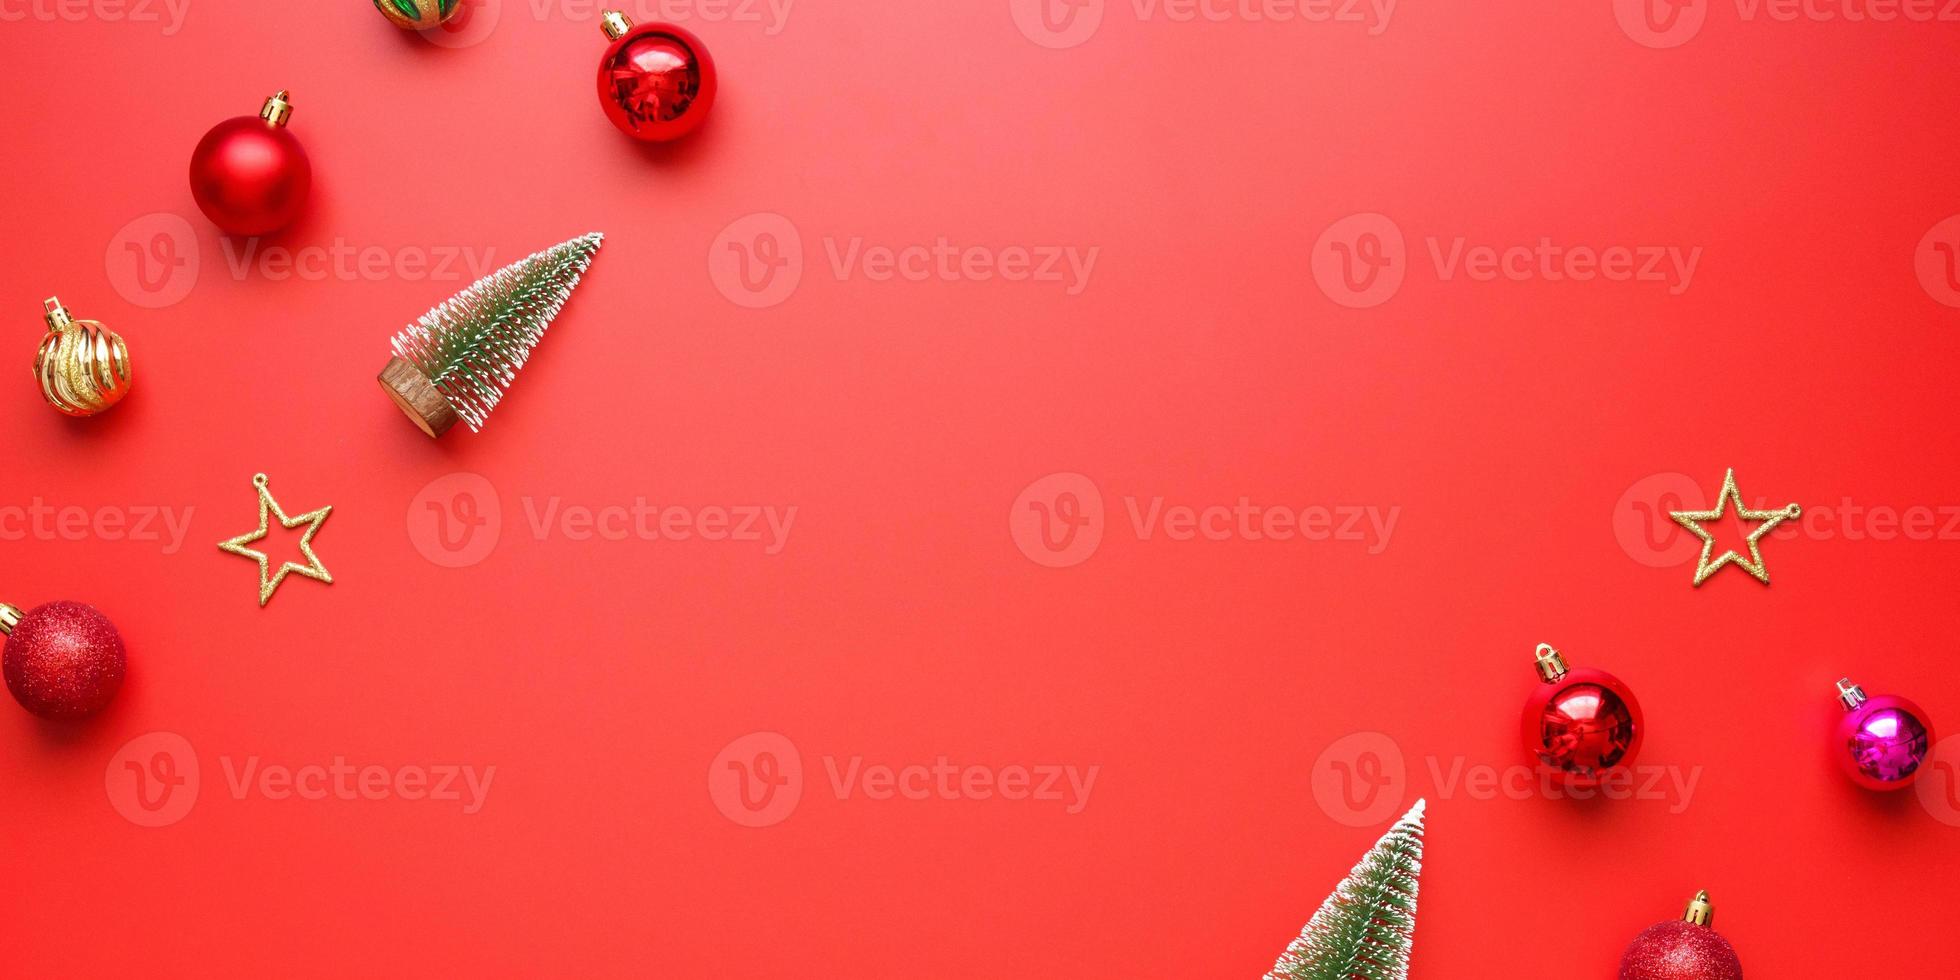 weihnachten neujahr urlaub hintergrund kiefer kugel kugel auf rotem hintergrund foto